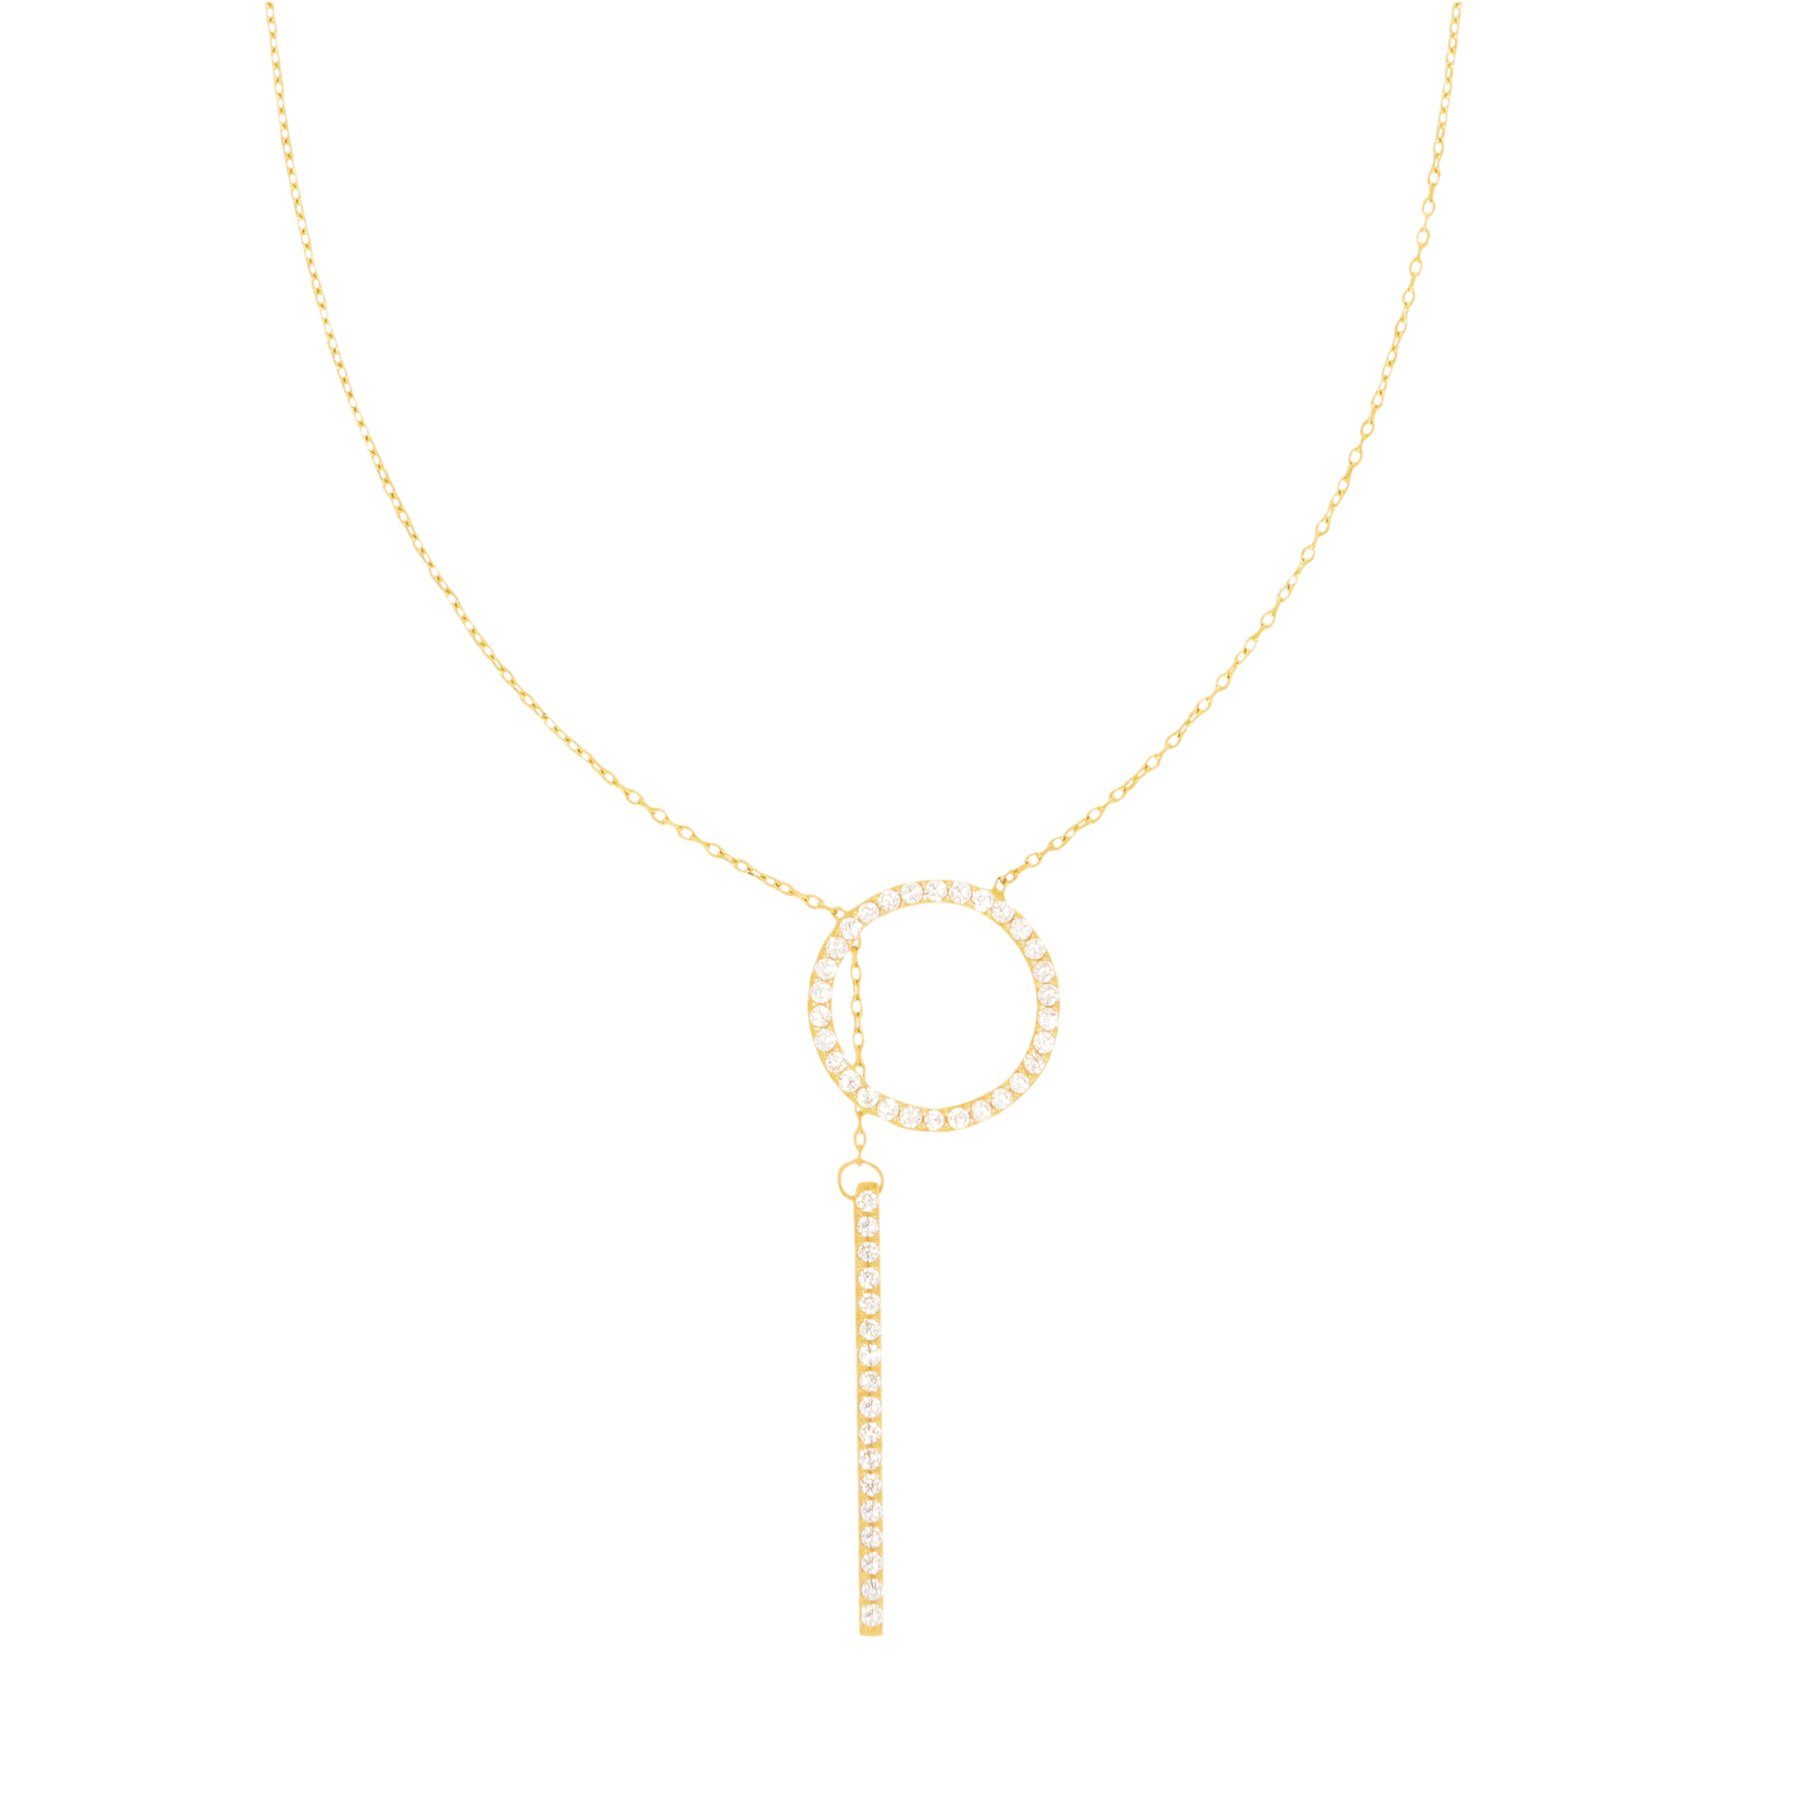 Stella-Jewellery Collier 585er Gold Halskette mit Kreis und gleitendem Steg (inkl. Etui), 585 Gelbgold mit Kreis und Steg Zirkonia